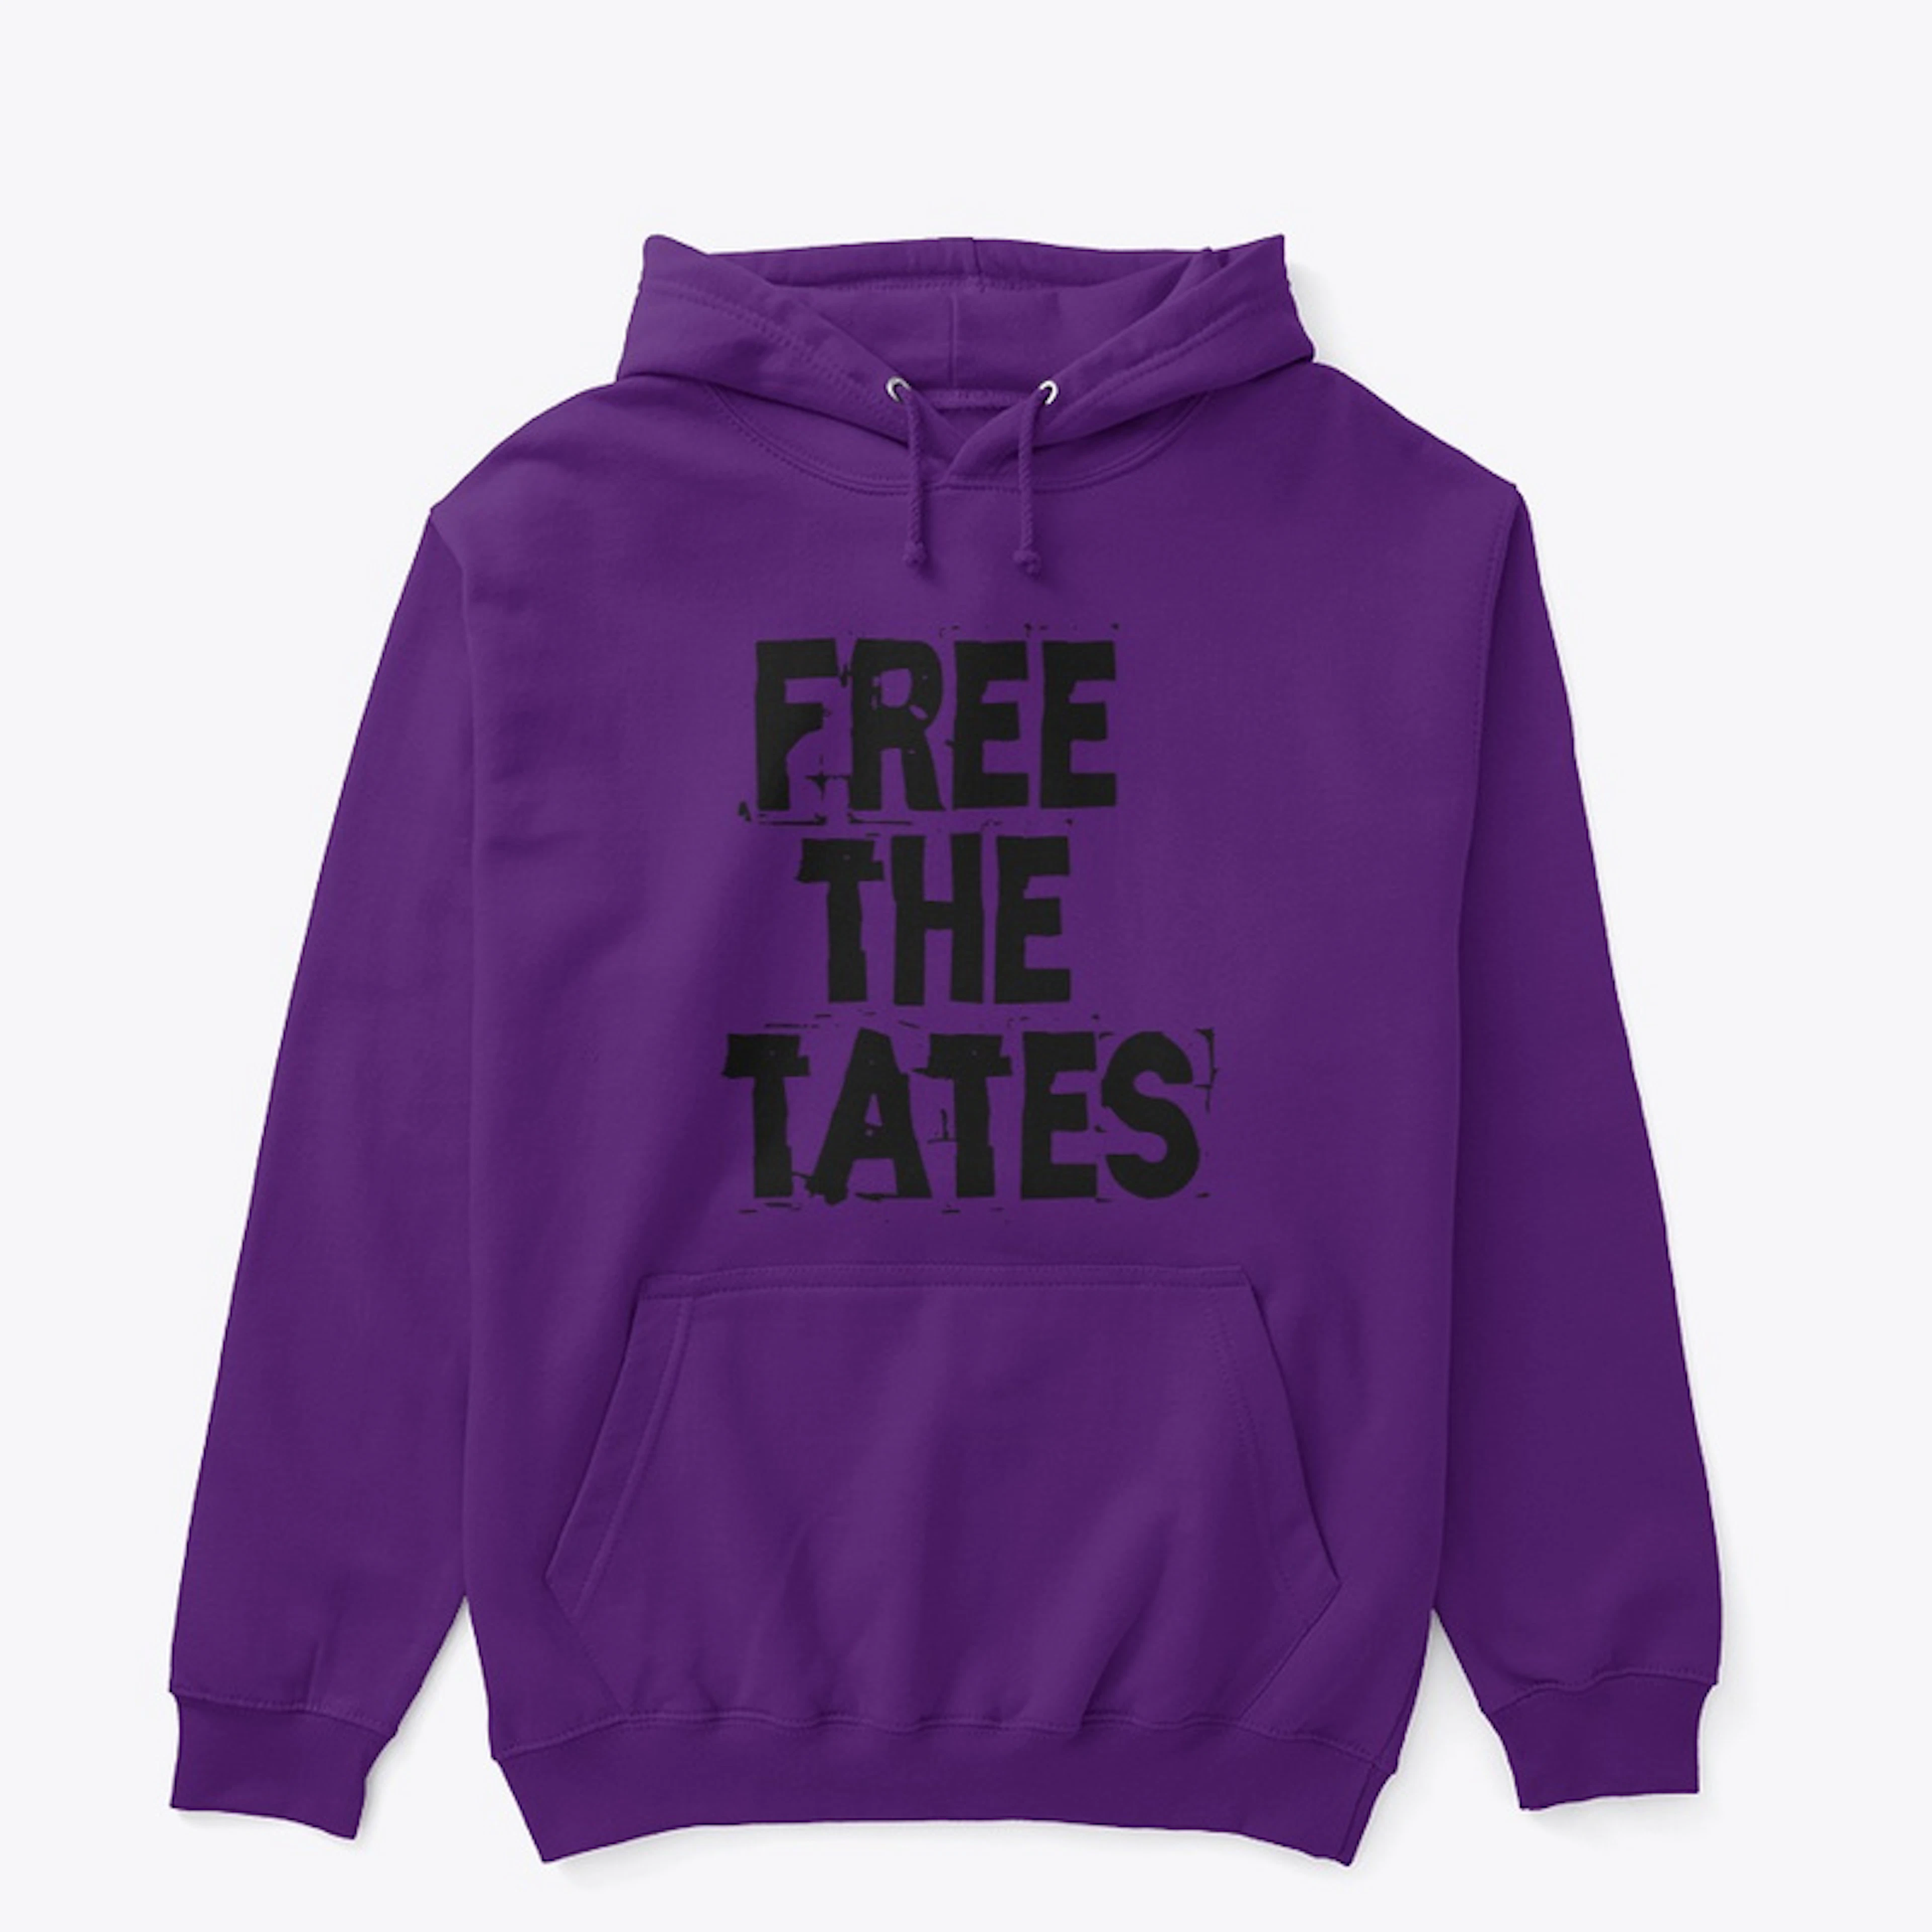 Free The Tates